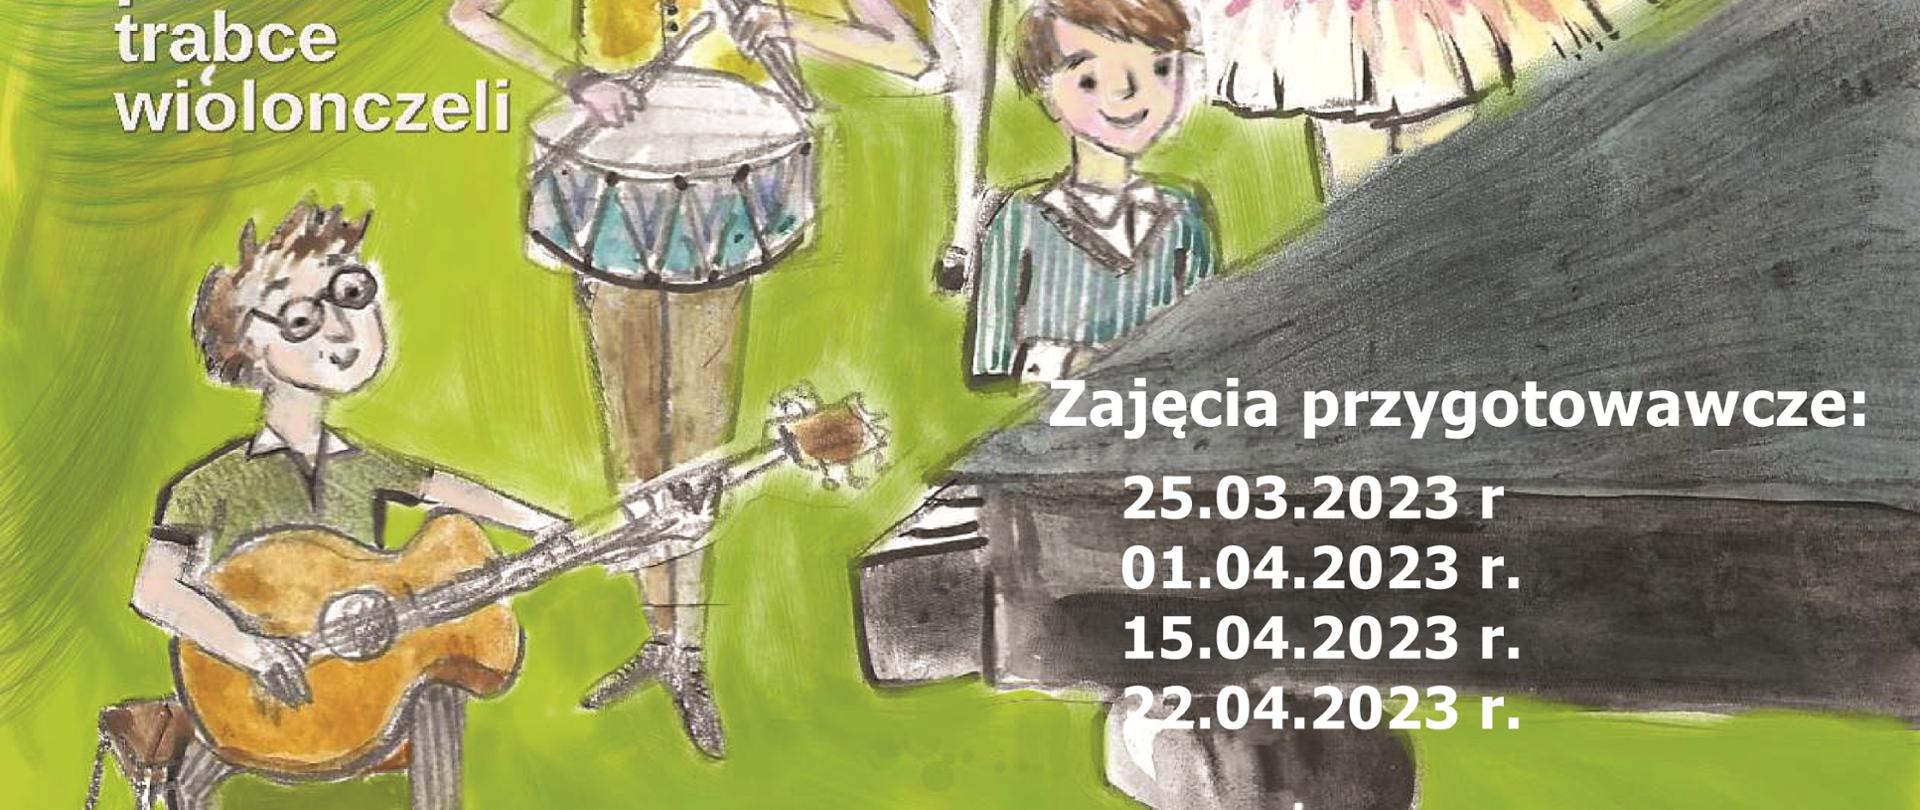 plakat zielone tło, grafika przedstawiające grające dzieci na różnych instrumentach, w treść - Państwowa Szkoła Muzyczna w Kutnie zaprasza dzieci do nauki gry na instrumentach, zajęcia przygotowawcze odbywać się będą 25 marca, 1, 15, 22 kwietnia 2023